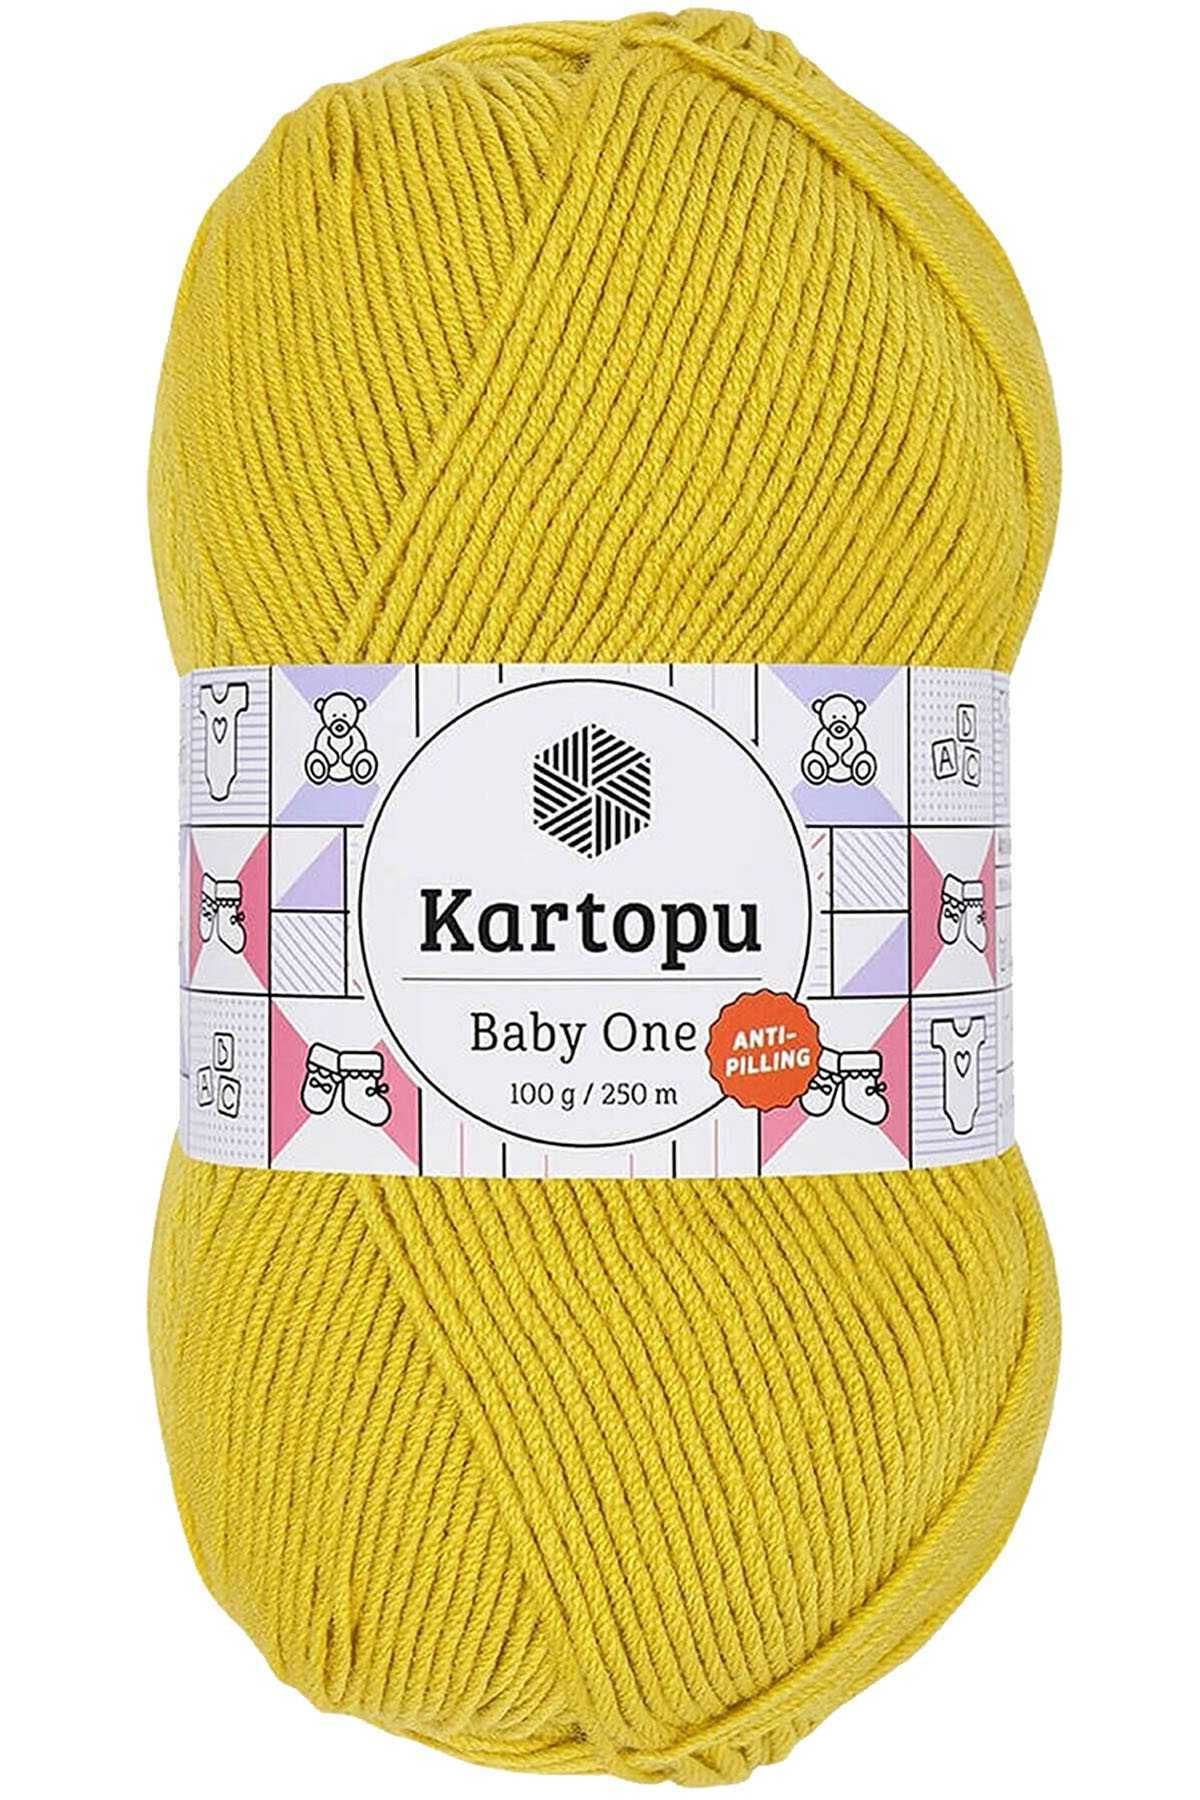 Kartopu Baby One Tüylenmeyen El Örgü İpi Yünü Hardal Sarı K1321